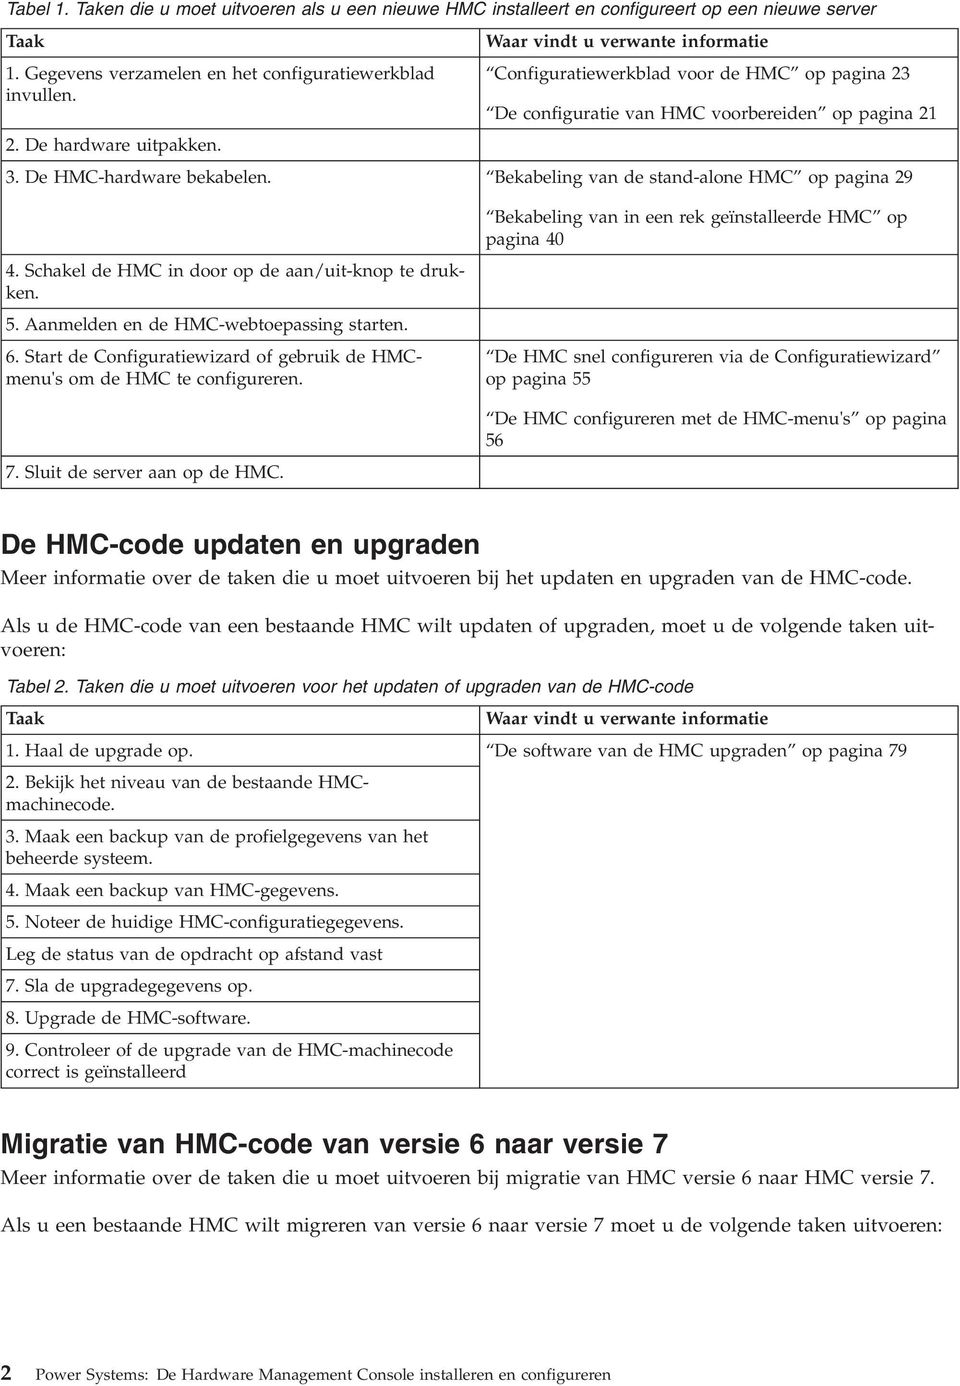 De HMC-hardware bekabelen. Bekabeling van de stand-alone HMC op pagina 29 4. Schakel de HMC in door op de aan/uit-knop te drukken. 5. Aanmelden en de HMC-webtoepassing starten. 6.